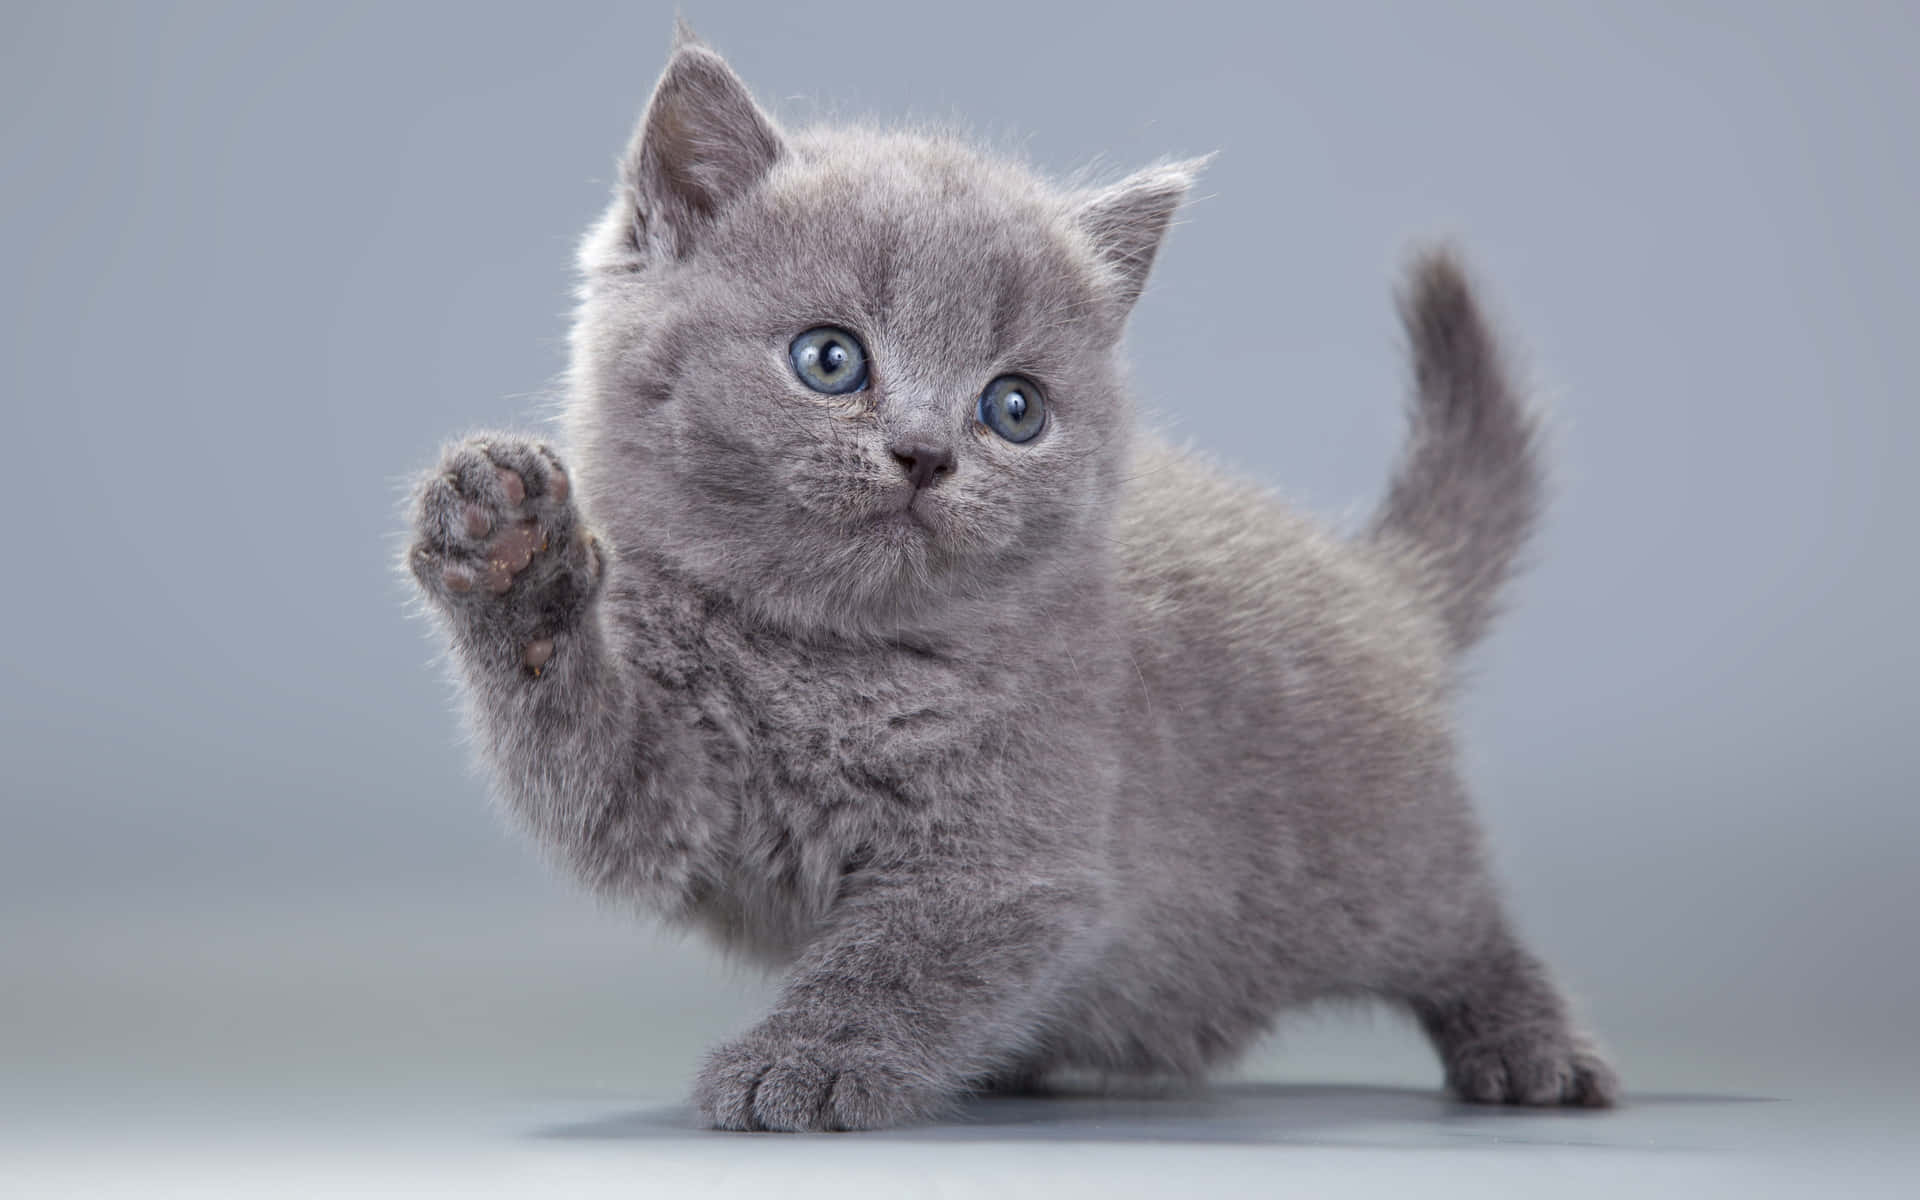 Kitten Kat med Fluffy Ører og Store Øjne